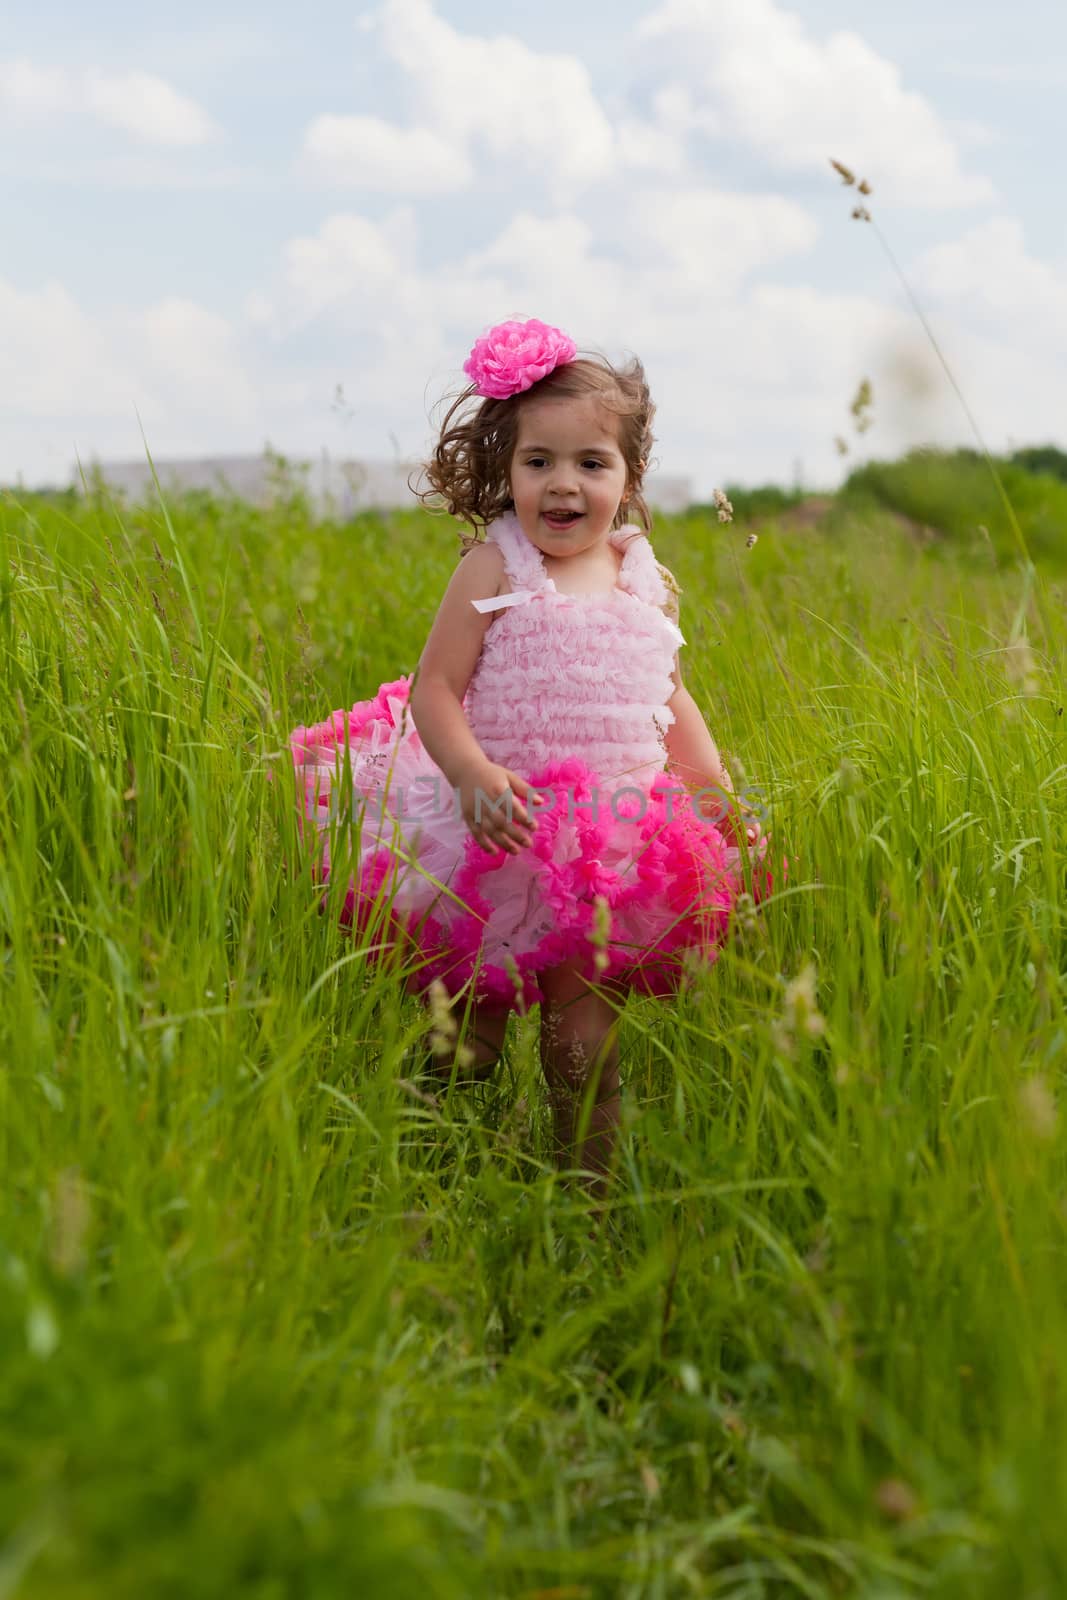 little girl in a pink dress runs on a grass